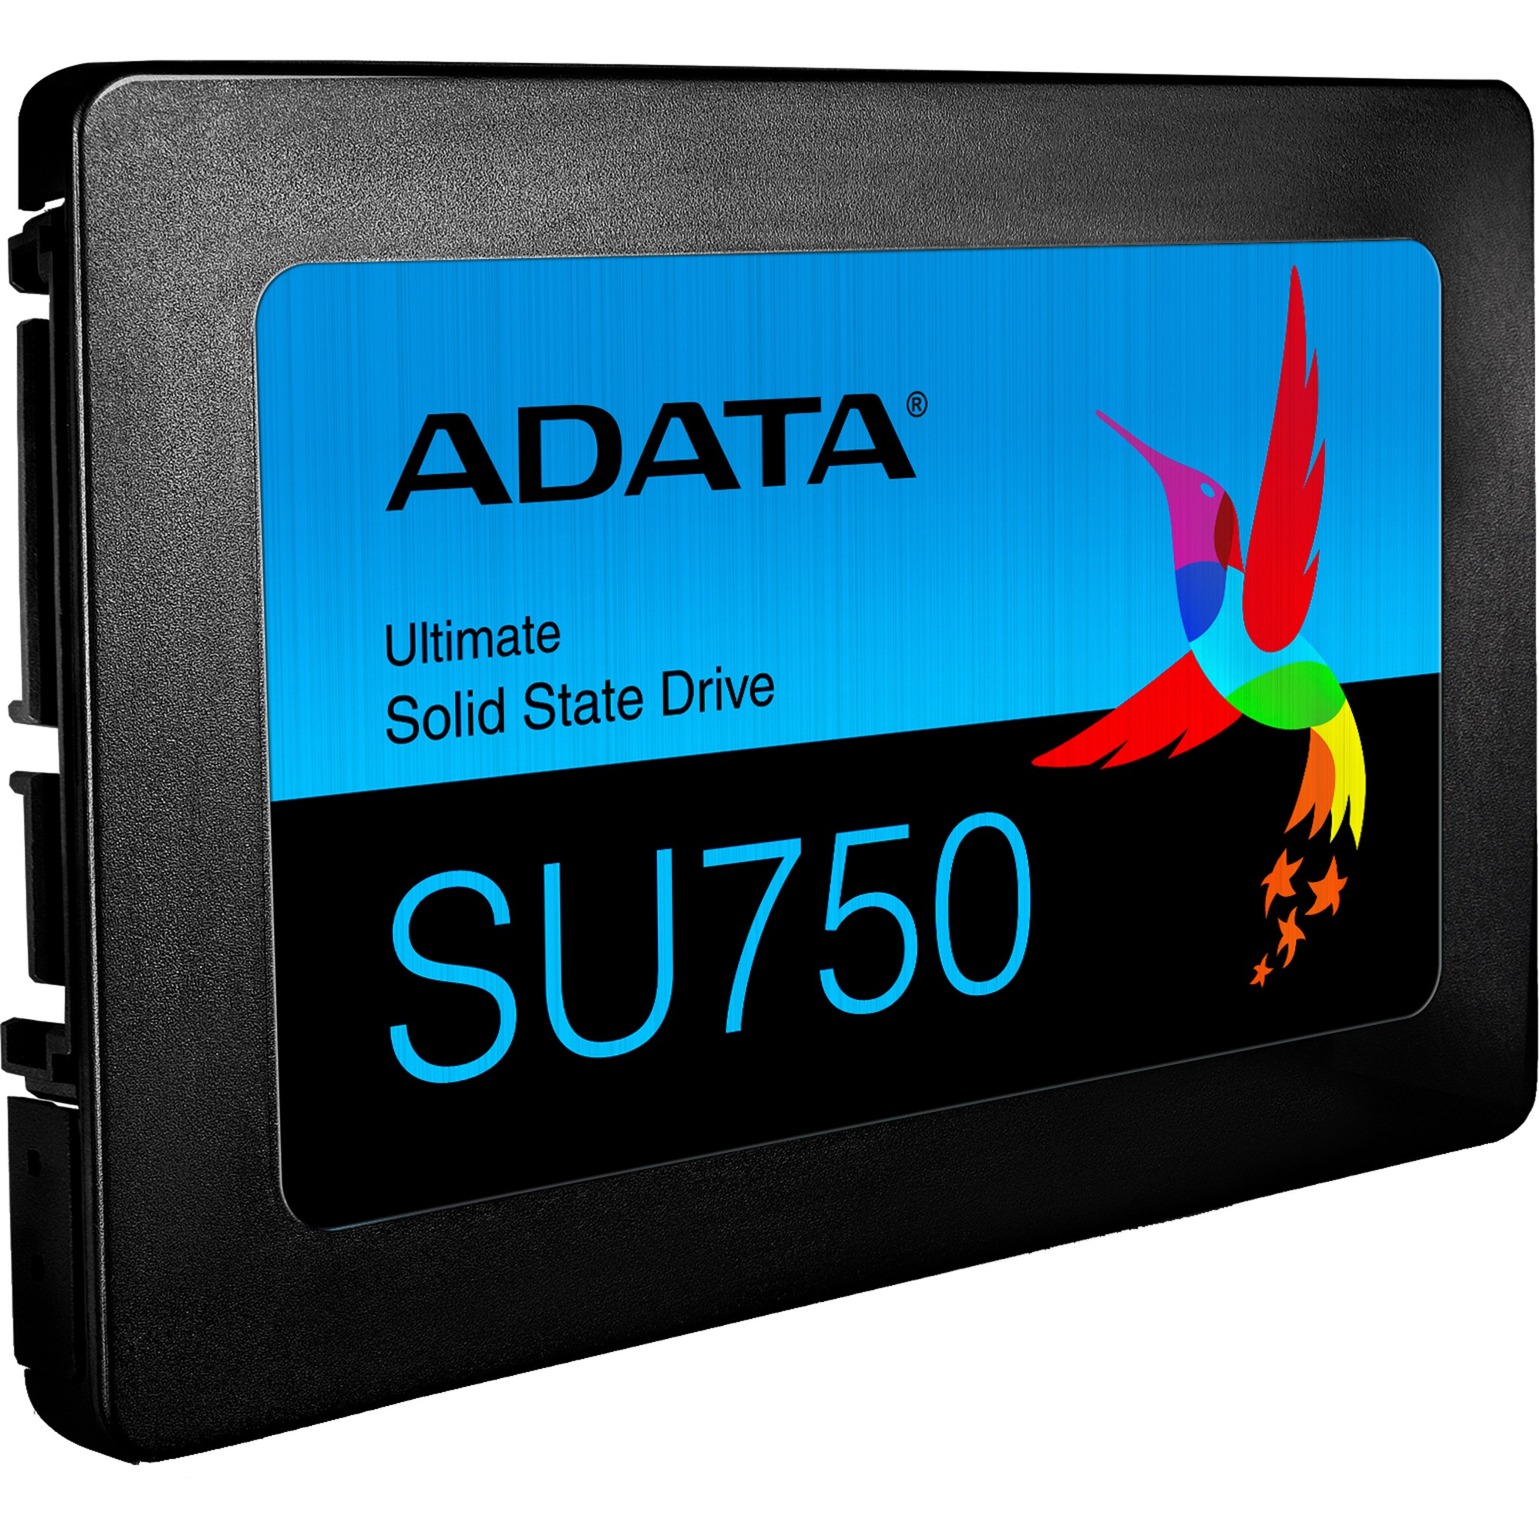 Image of Alternate - Ultimate SU750 512 GB, SSD online einkaufen bei Alternate